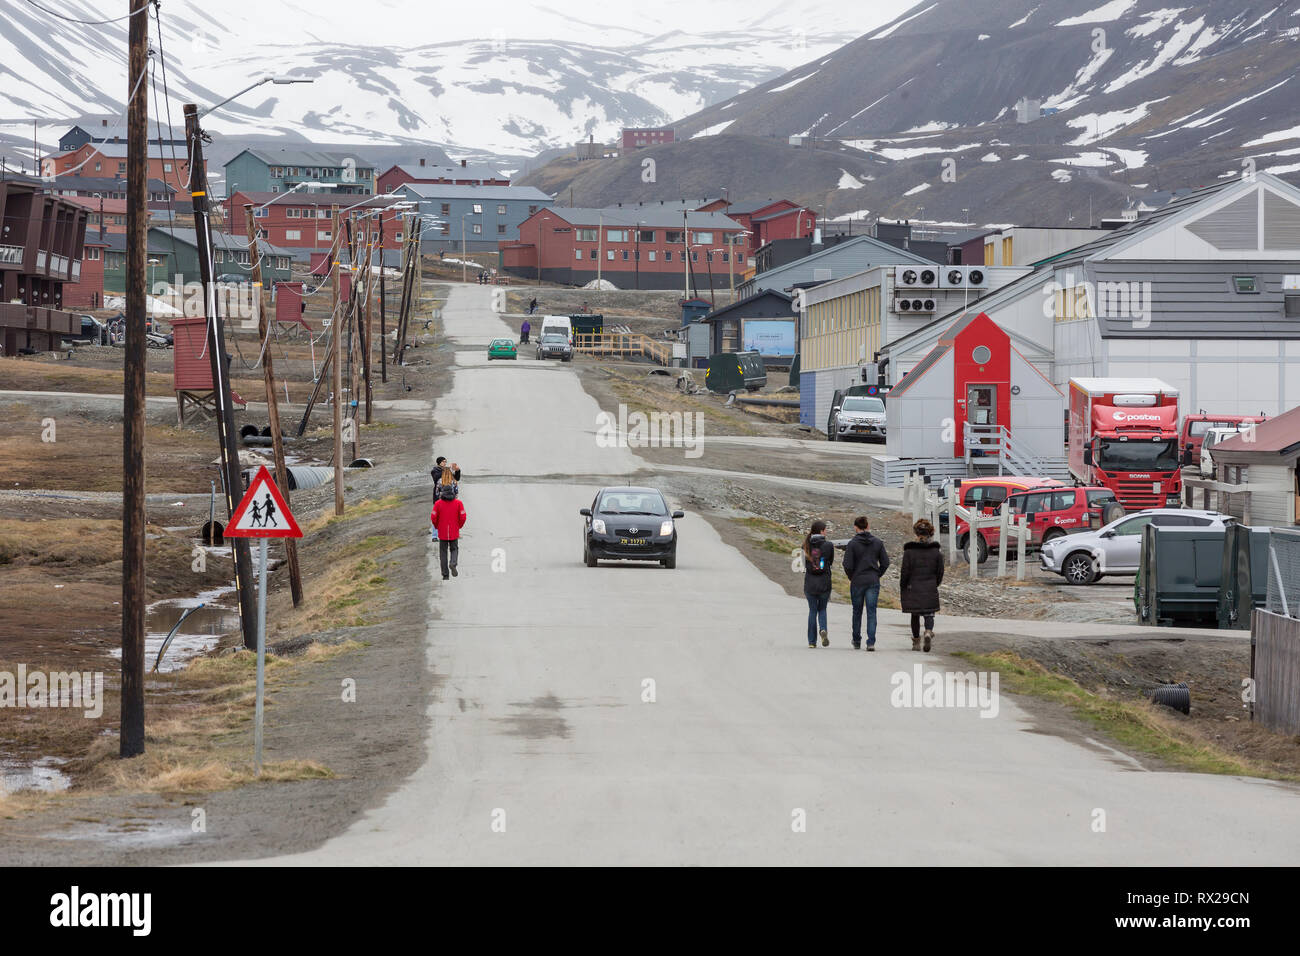 Visiteurs flâner dans une rue de Longyearbyen, une petite communauté norvégienne située à 78.22N 15.65E les mondes les plus nordiques d'aucune sorte avec plus de 1 000 résidents permanents. L'île de Spitsbergen, Svalbard, Norvège. Banque D'Images